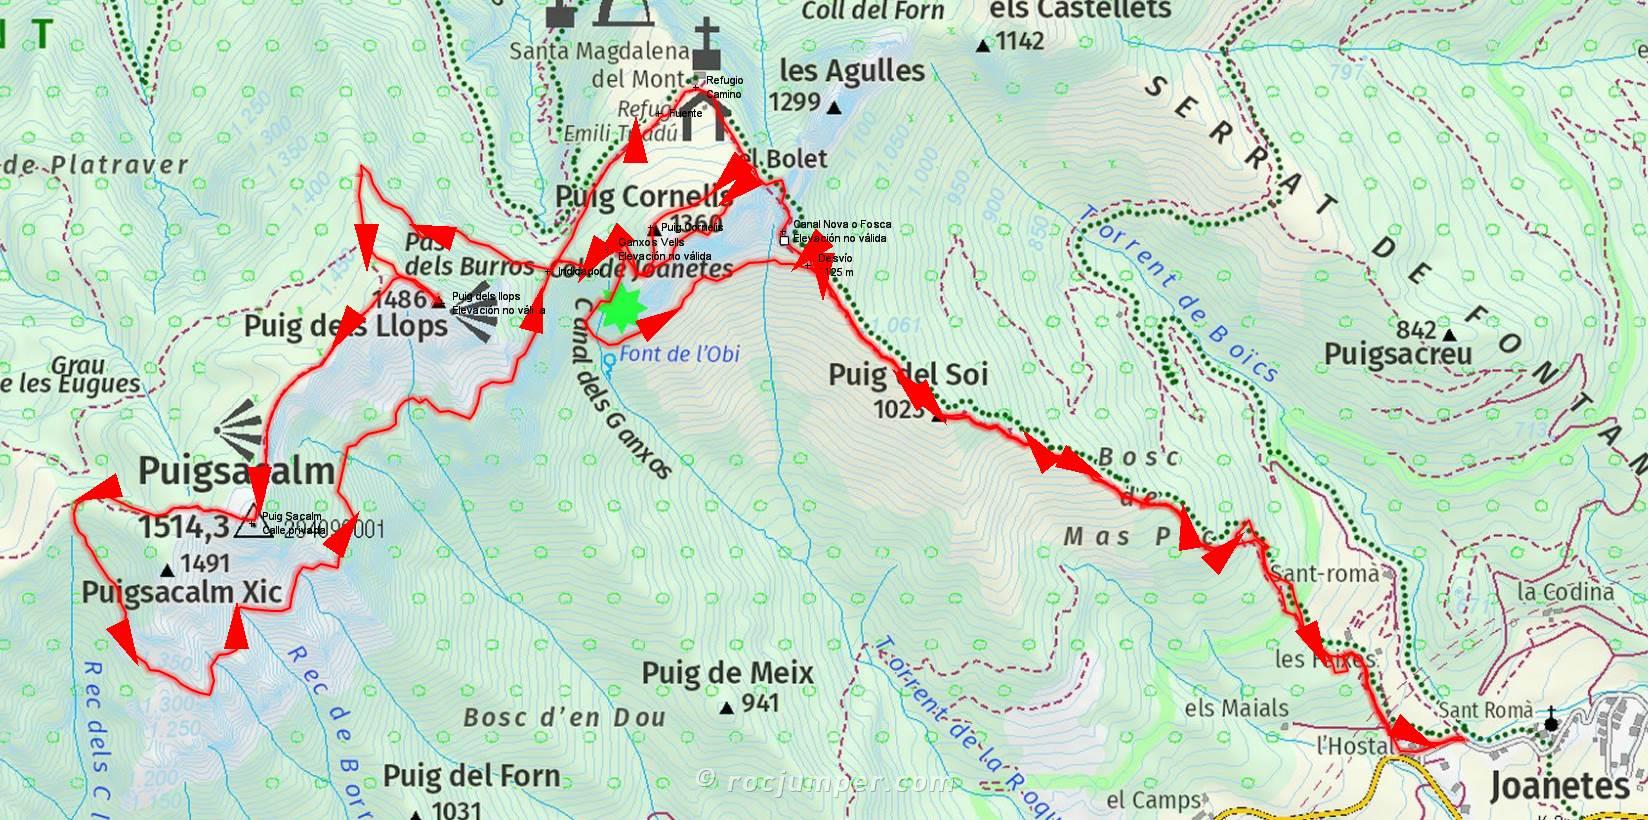 Mapa - Canal Fosca - Puigsacalm - Ganchos Vells - Joanetes by RocJumper